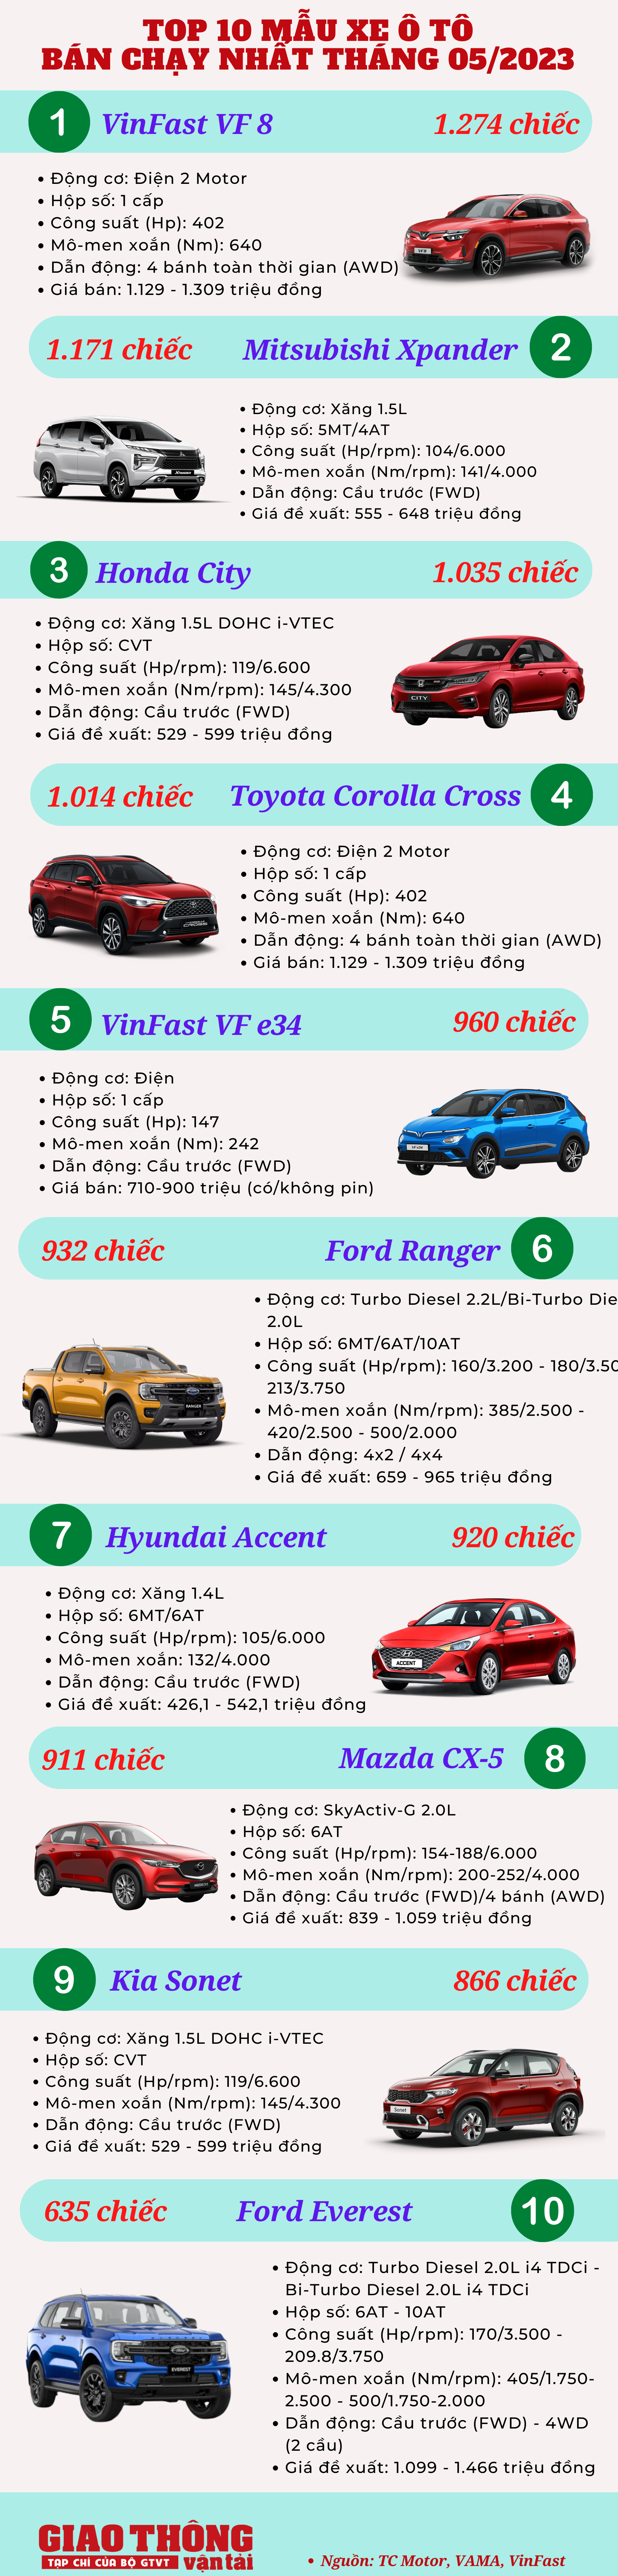 10 ô tô bán chạy tháng 5/2023: VinFast VF 8 lên đỉnh, Toyota Vios lại mất hút - Ảnh 2.